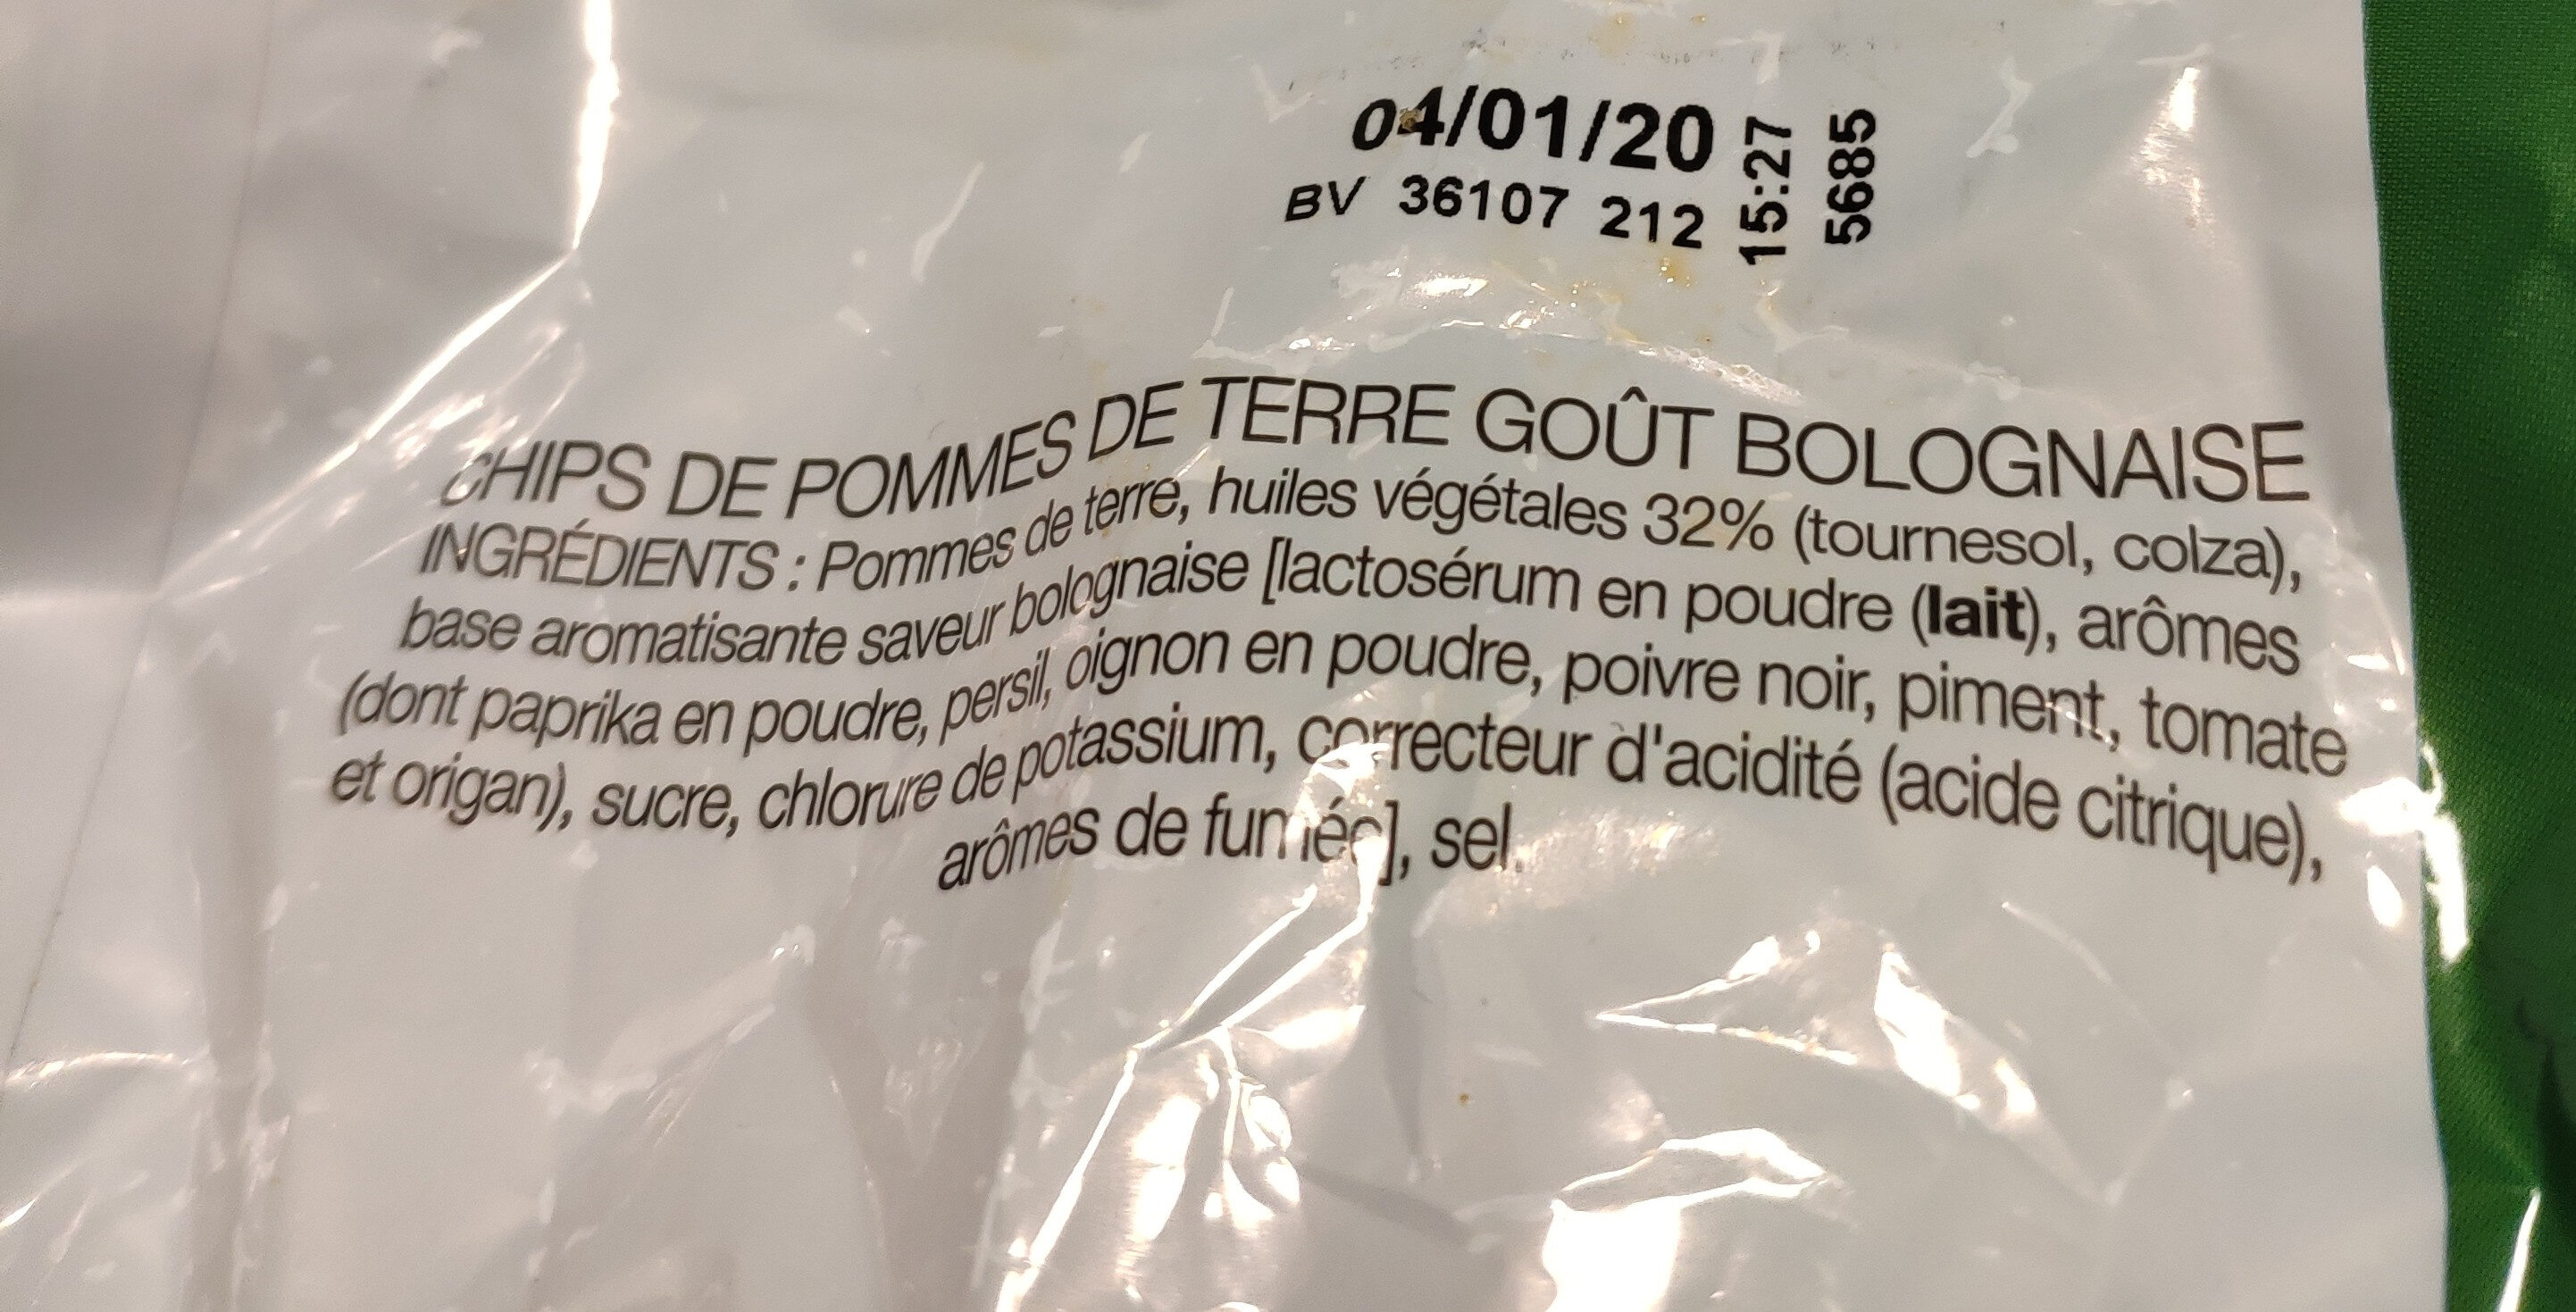 Chips saveur bolognaise - Ingrédients